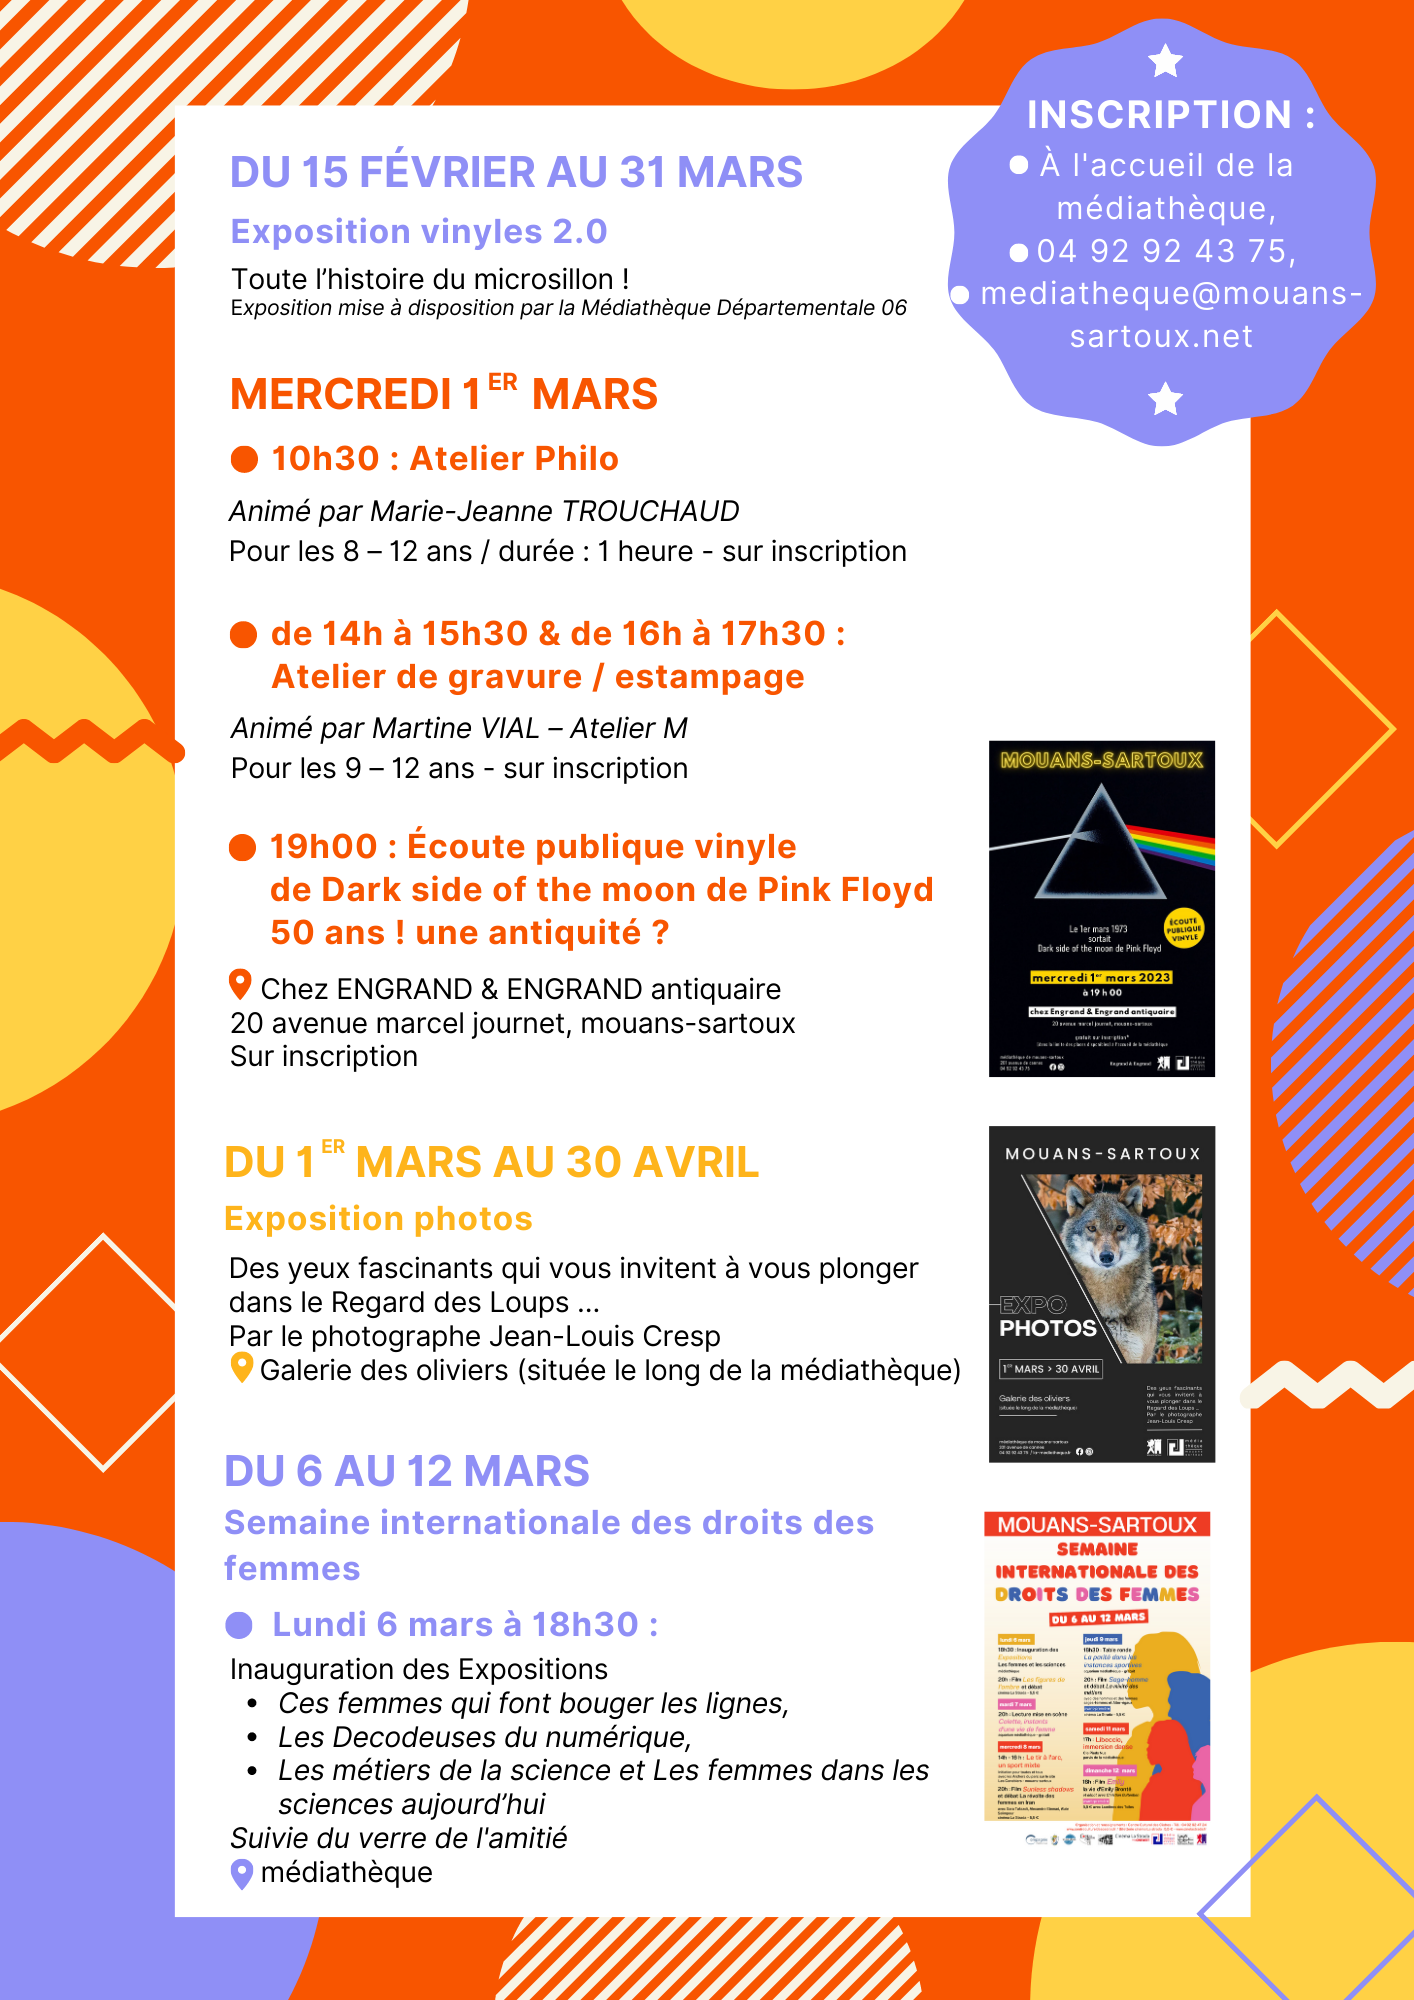 Programme médiathèque Mouans Sartoux 2